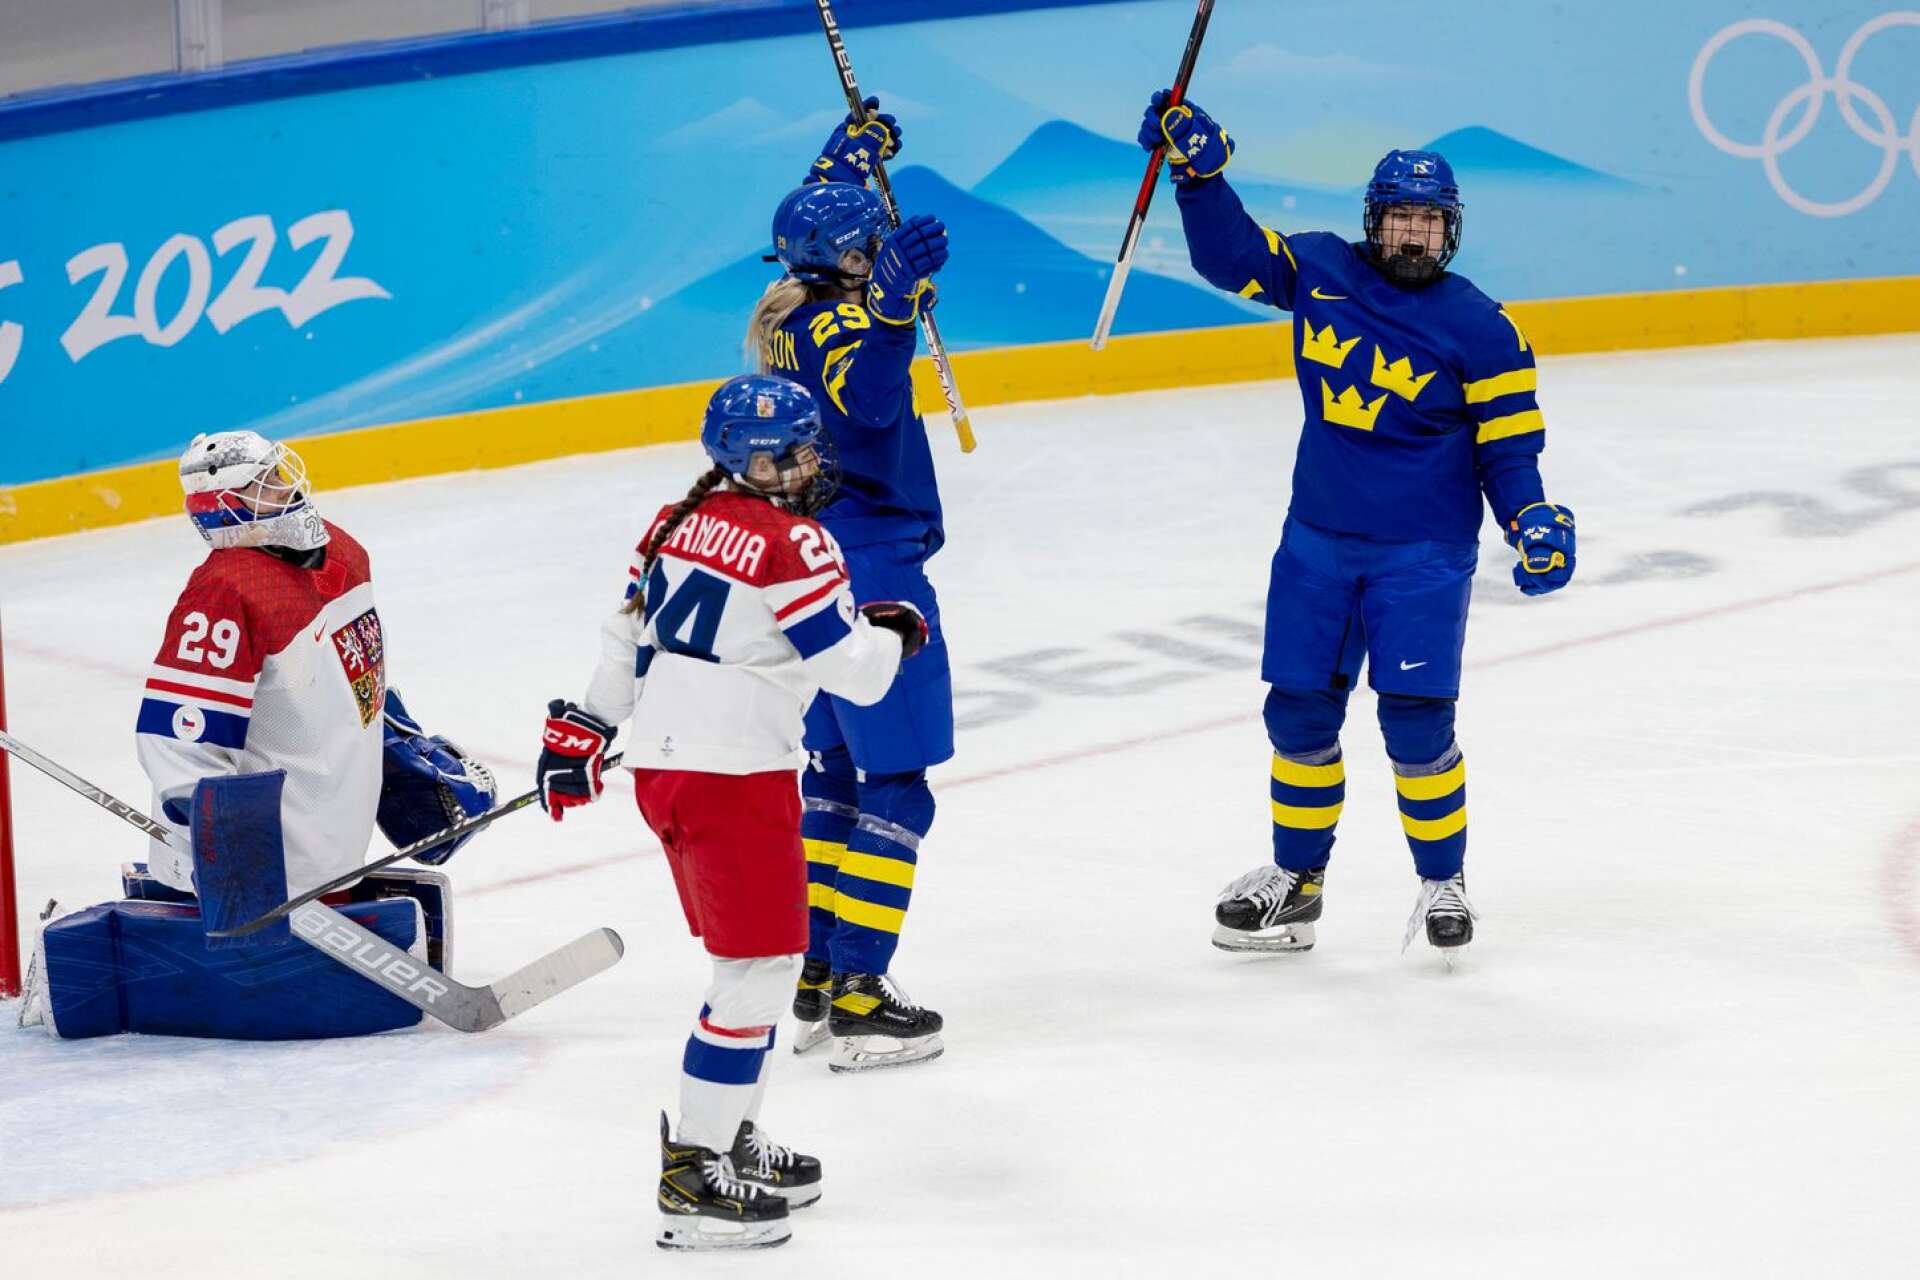 Sveriges Olivia Carlsson och Emma Murén (till höger) under OS i Peking.